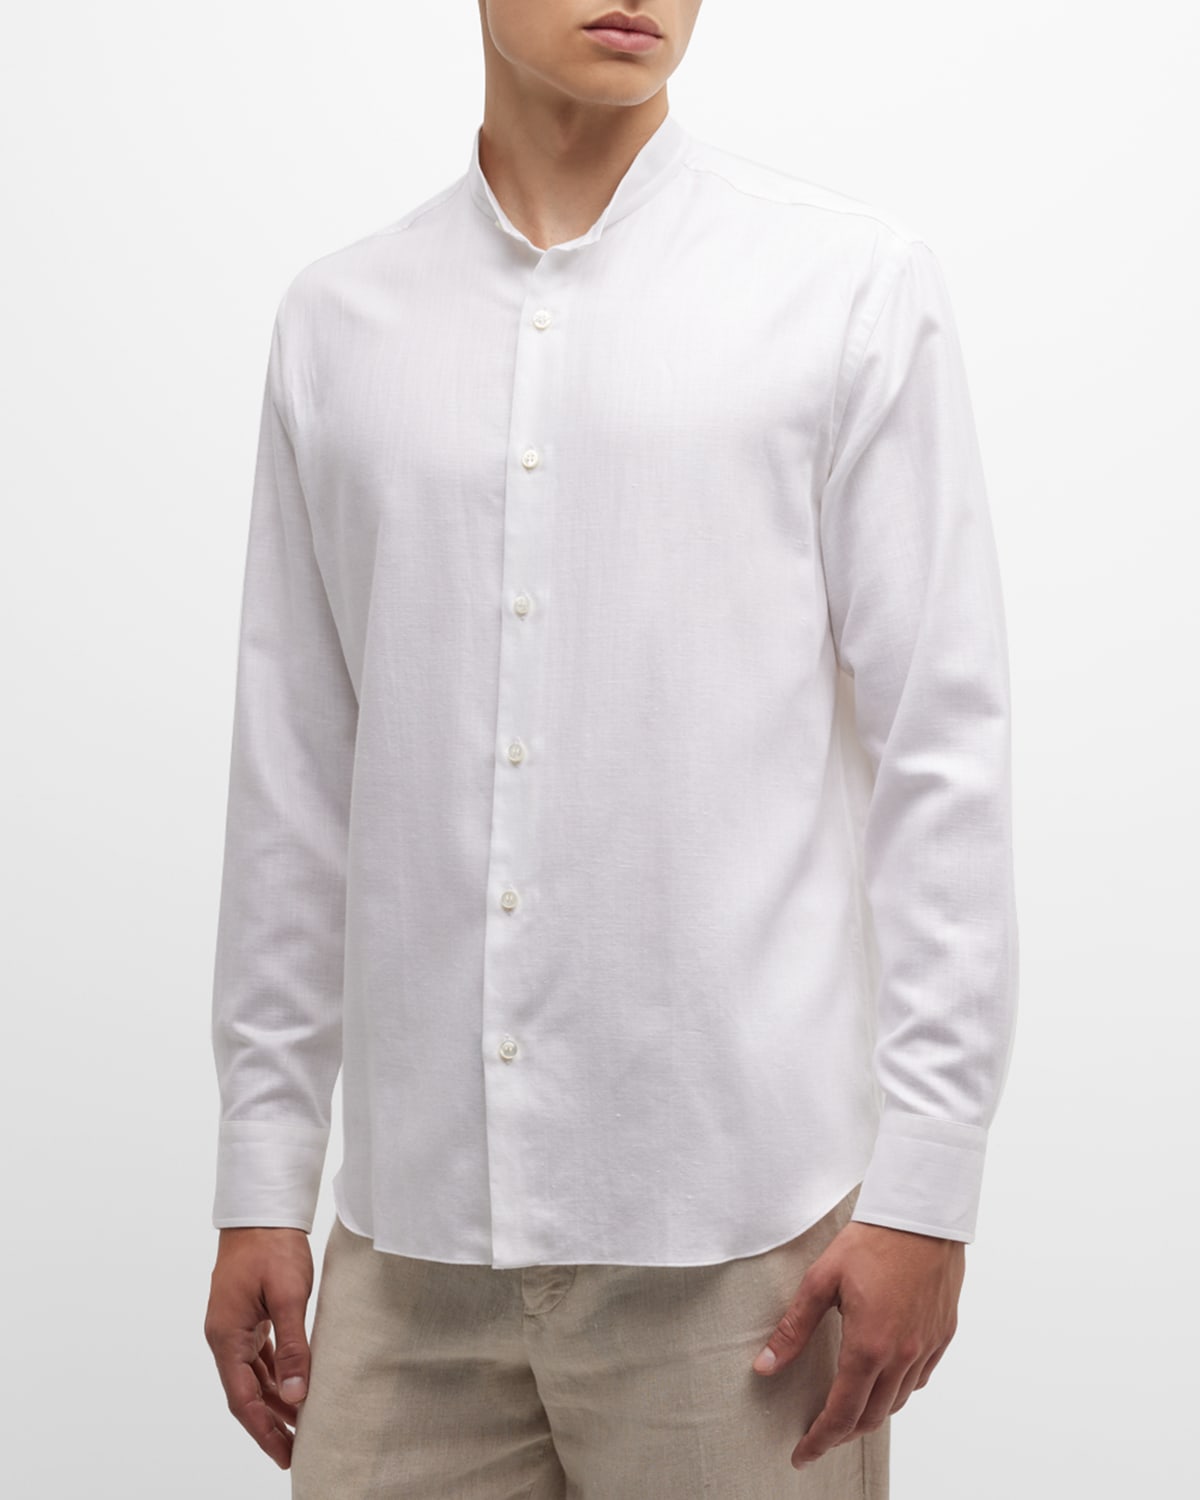 Men's Cotton Mandarin Collar Sport Shirt